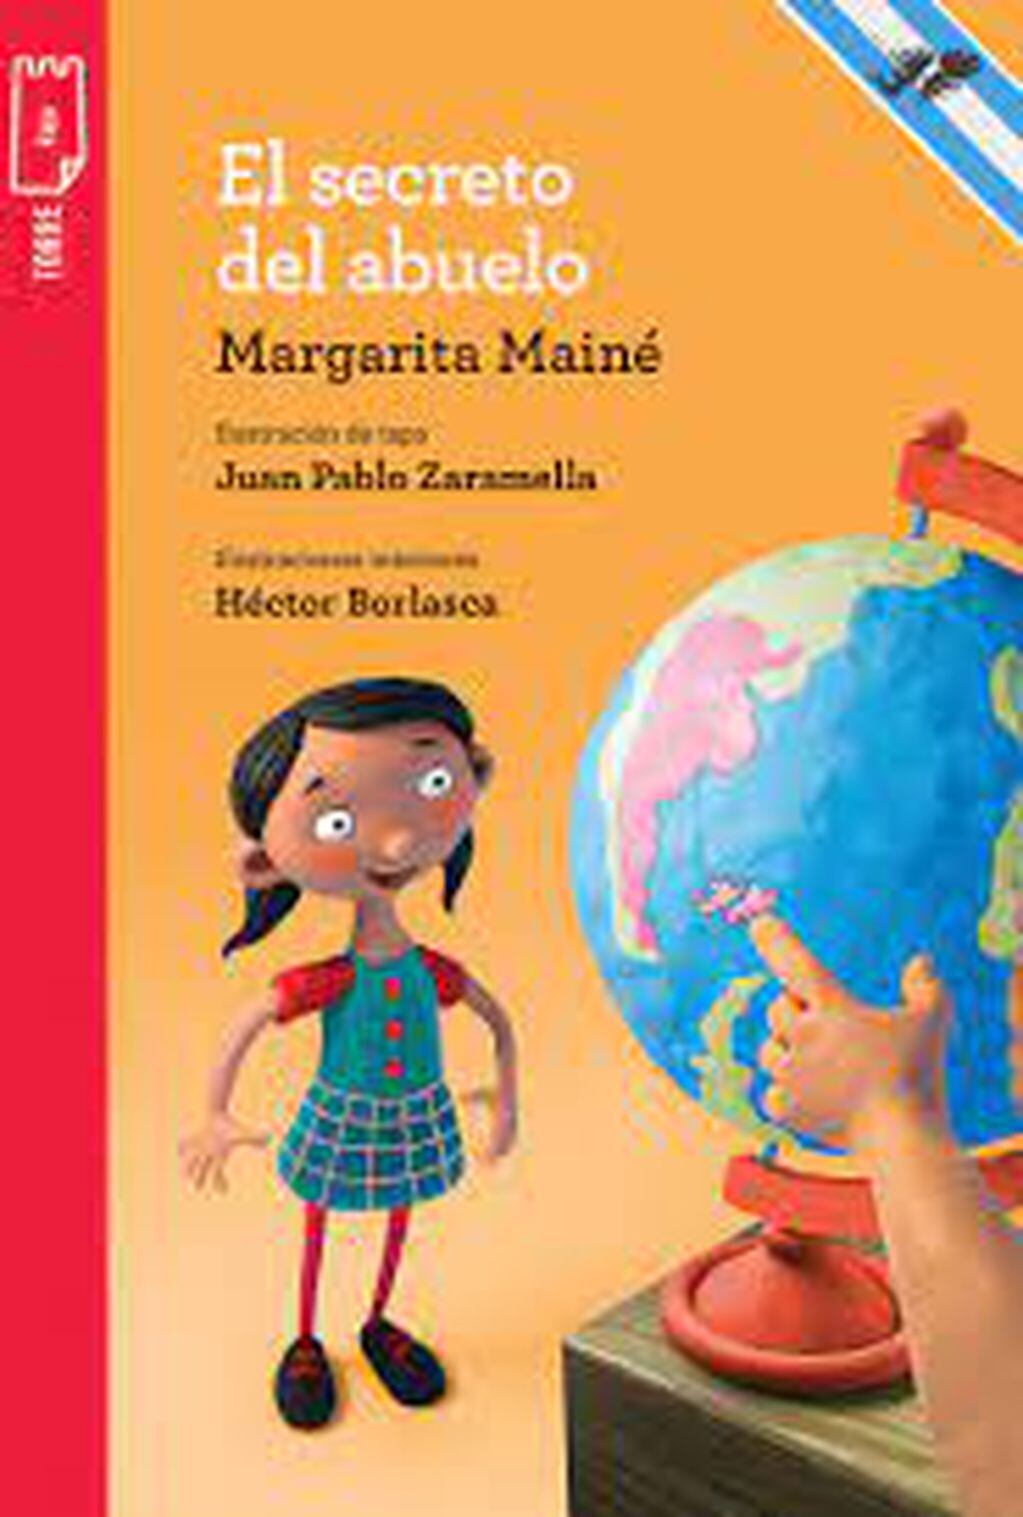 "El secreto del abuelo", un hermoso libro de Margarita Mainé que remonta nuestra historia de Malvinas.